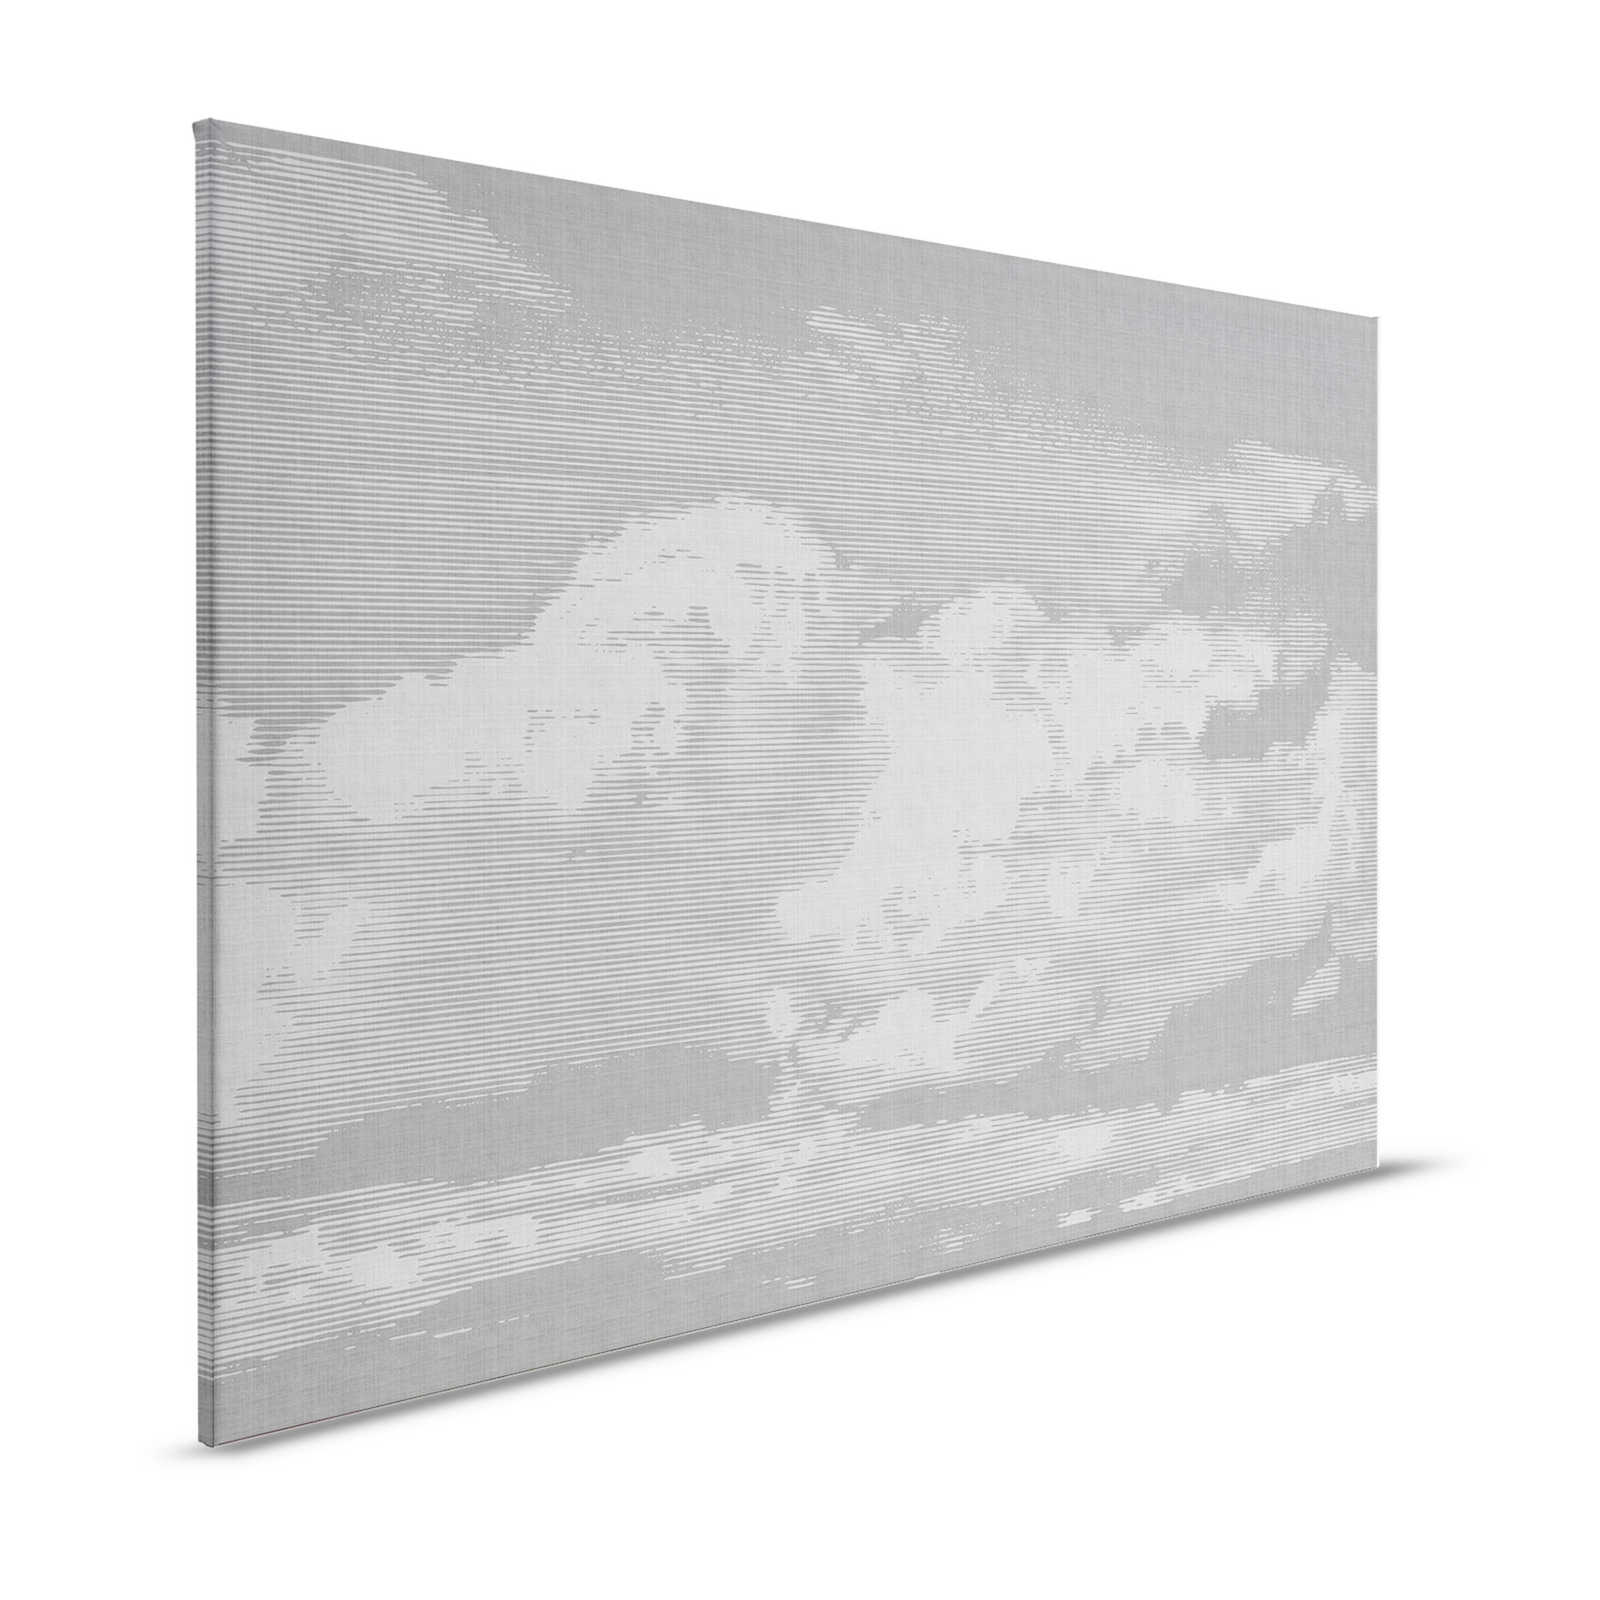 Nuvole 2 - Quadro su tela in lino naturale con motivo di nuvole - 1,20 m x 0,80 m
